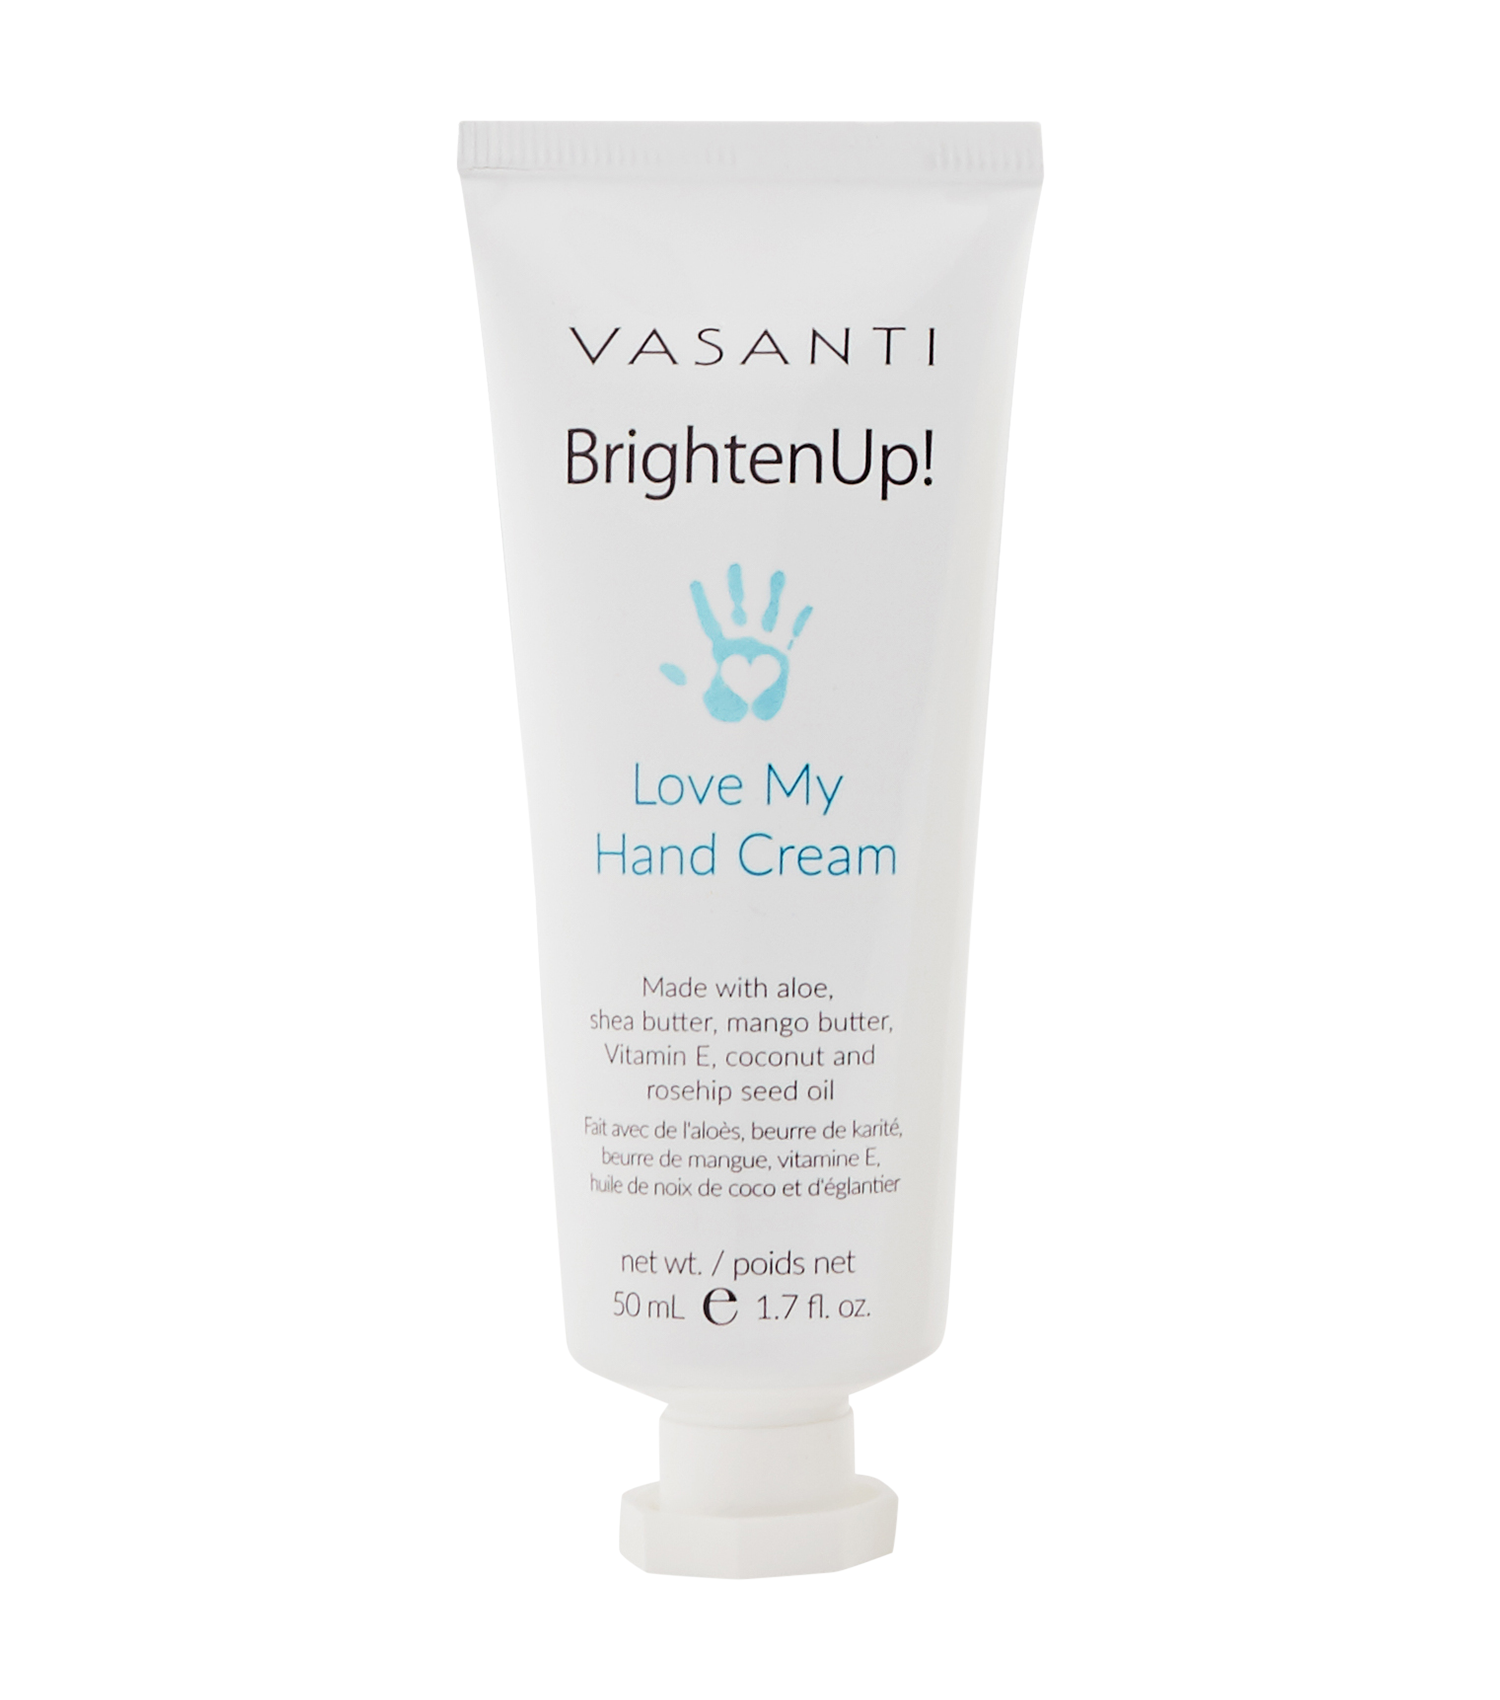 Brighten Up! Love my hand cream